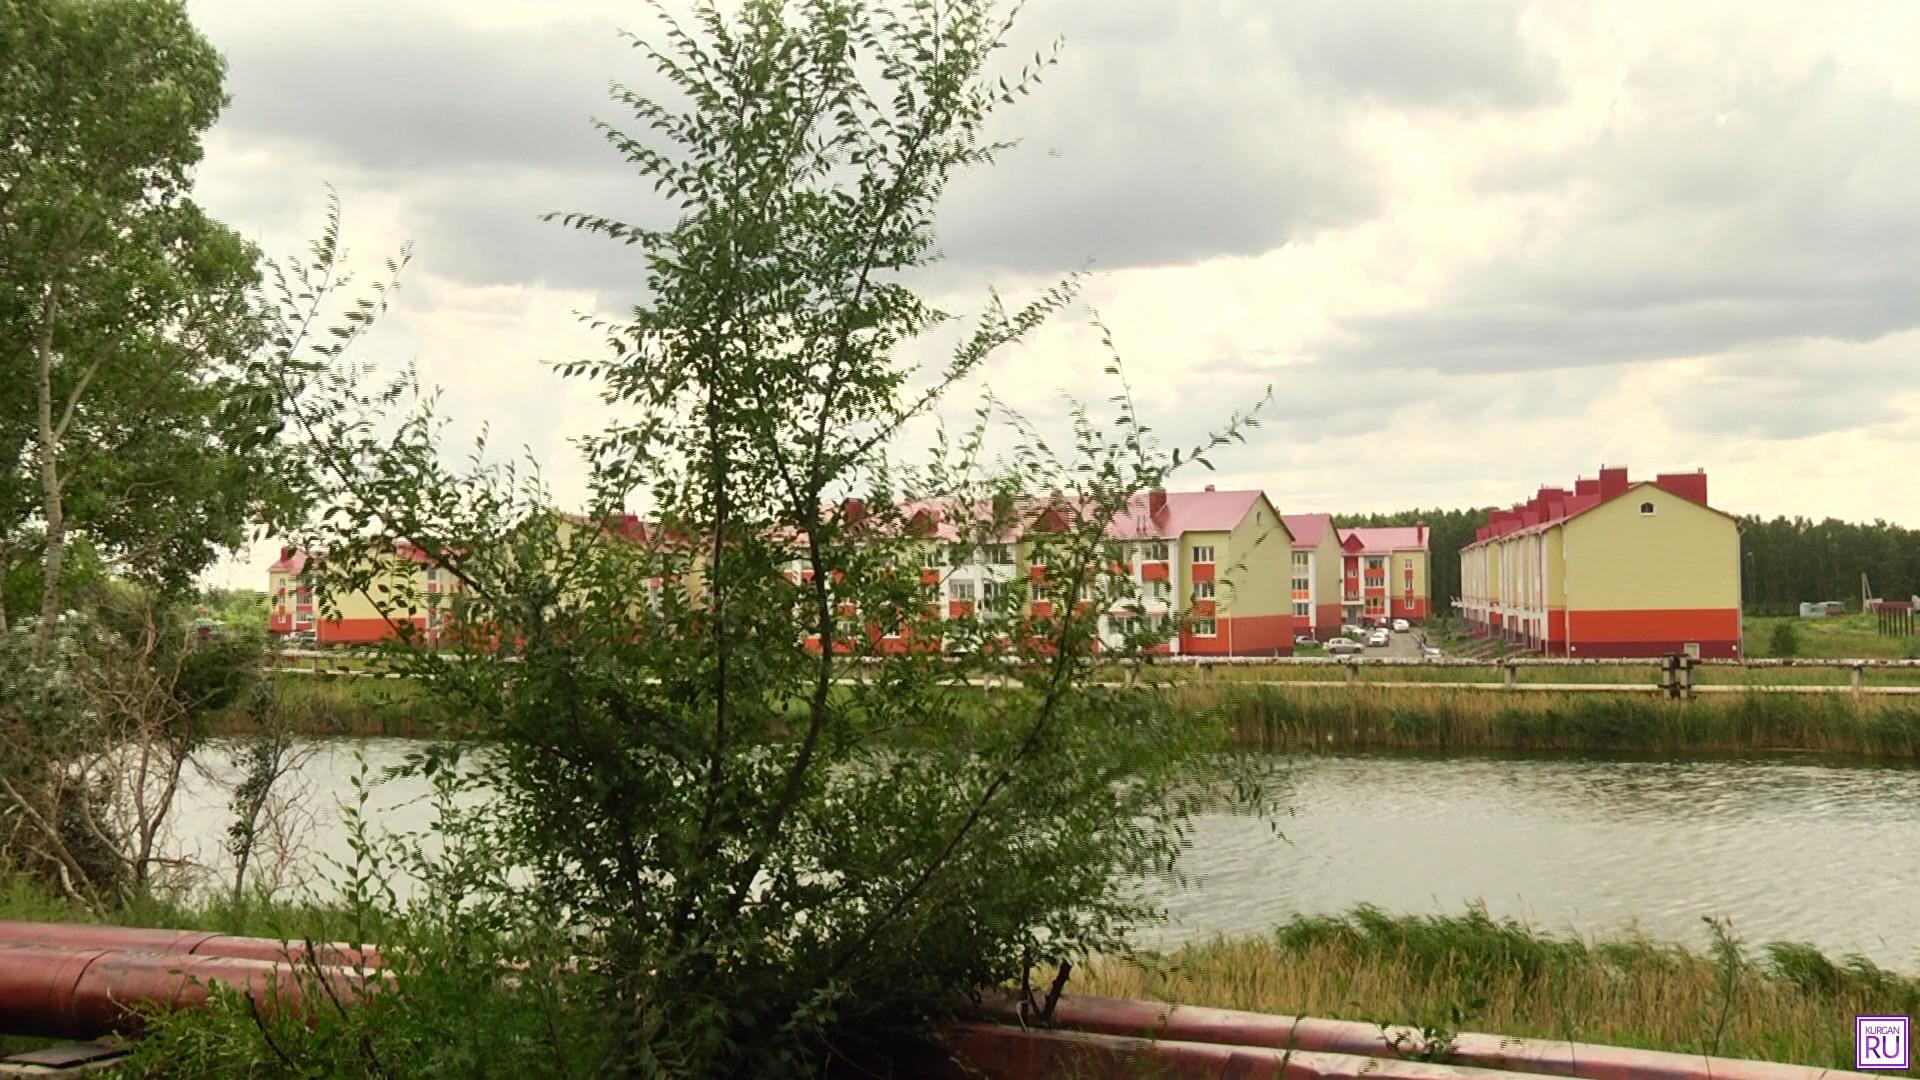 Из окон квартиры, где произошла трагедия, открывается живописный вид — река, красивый поселок, леса и бескрайнее небо. Фото Информационного агентство «KURGAN.RU».